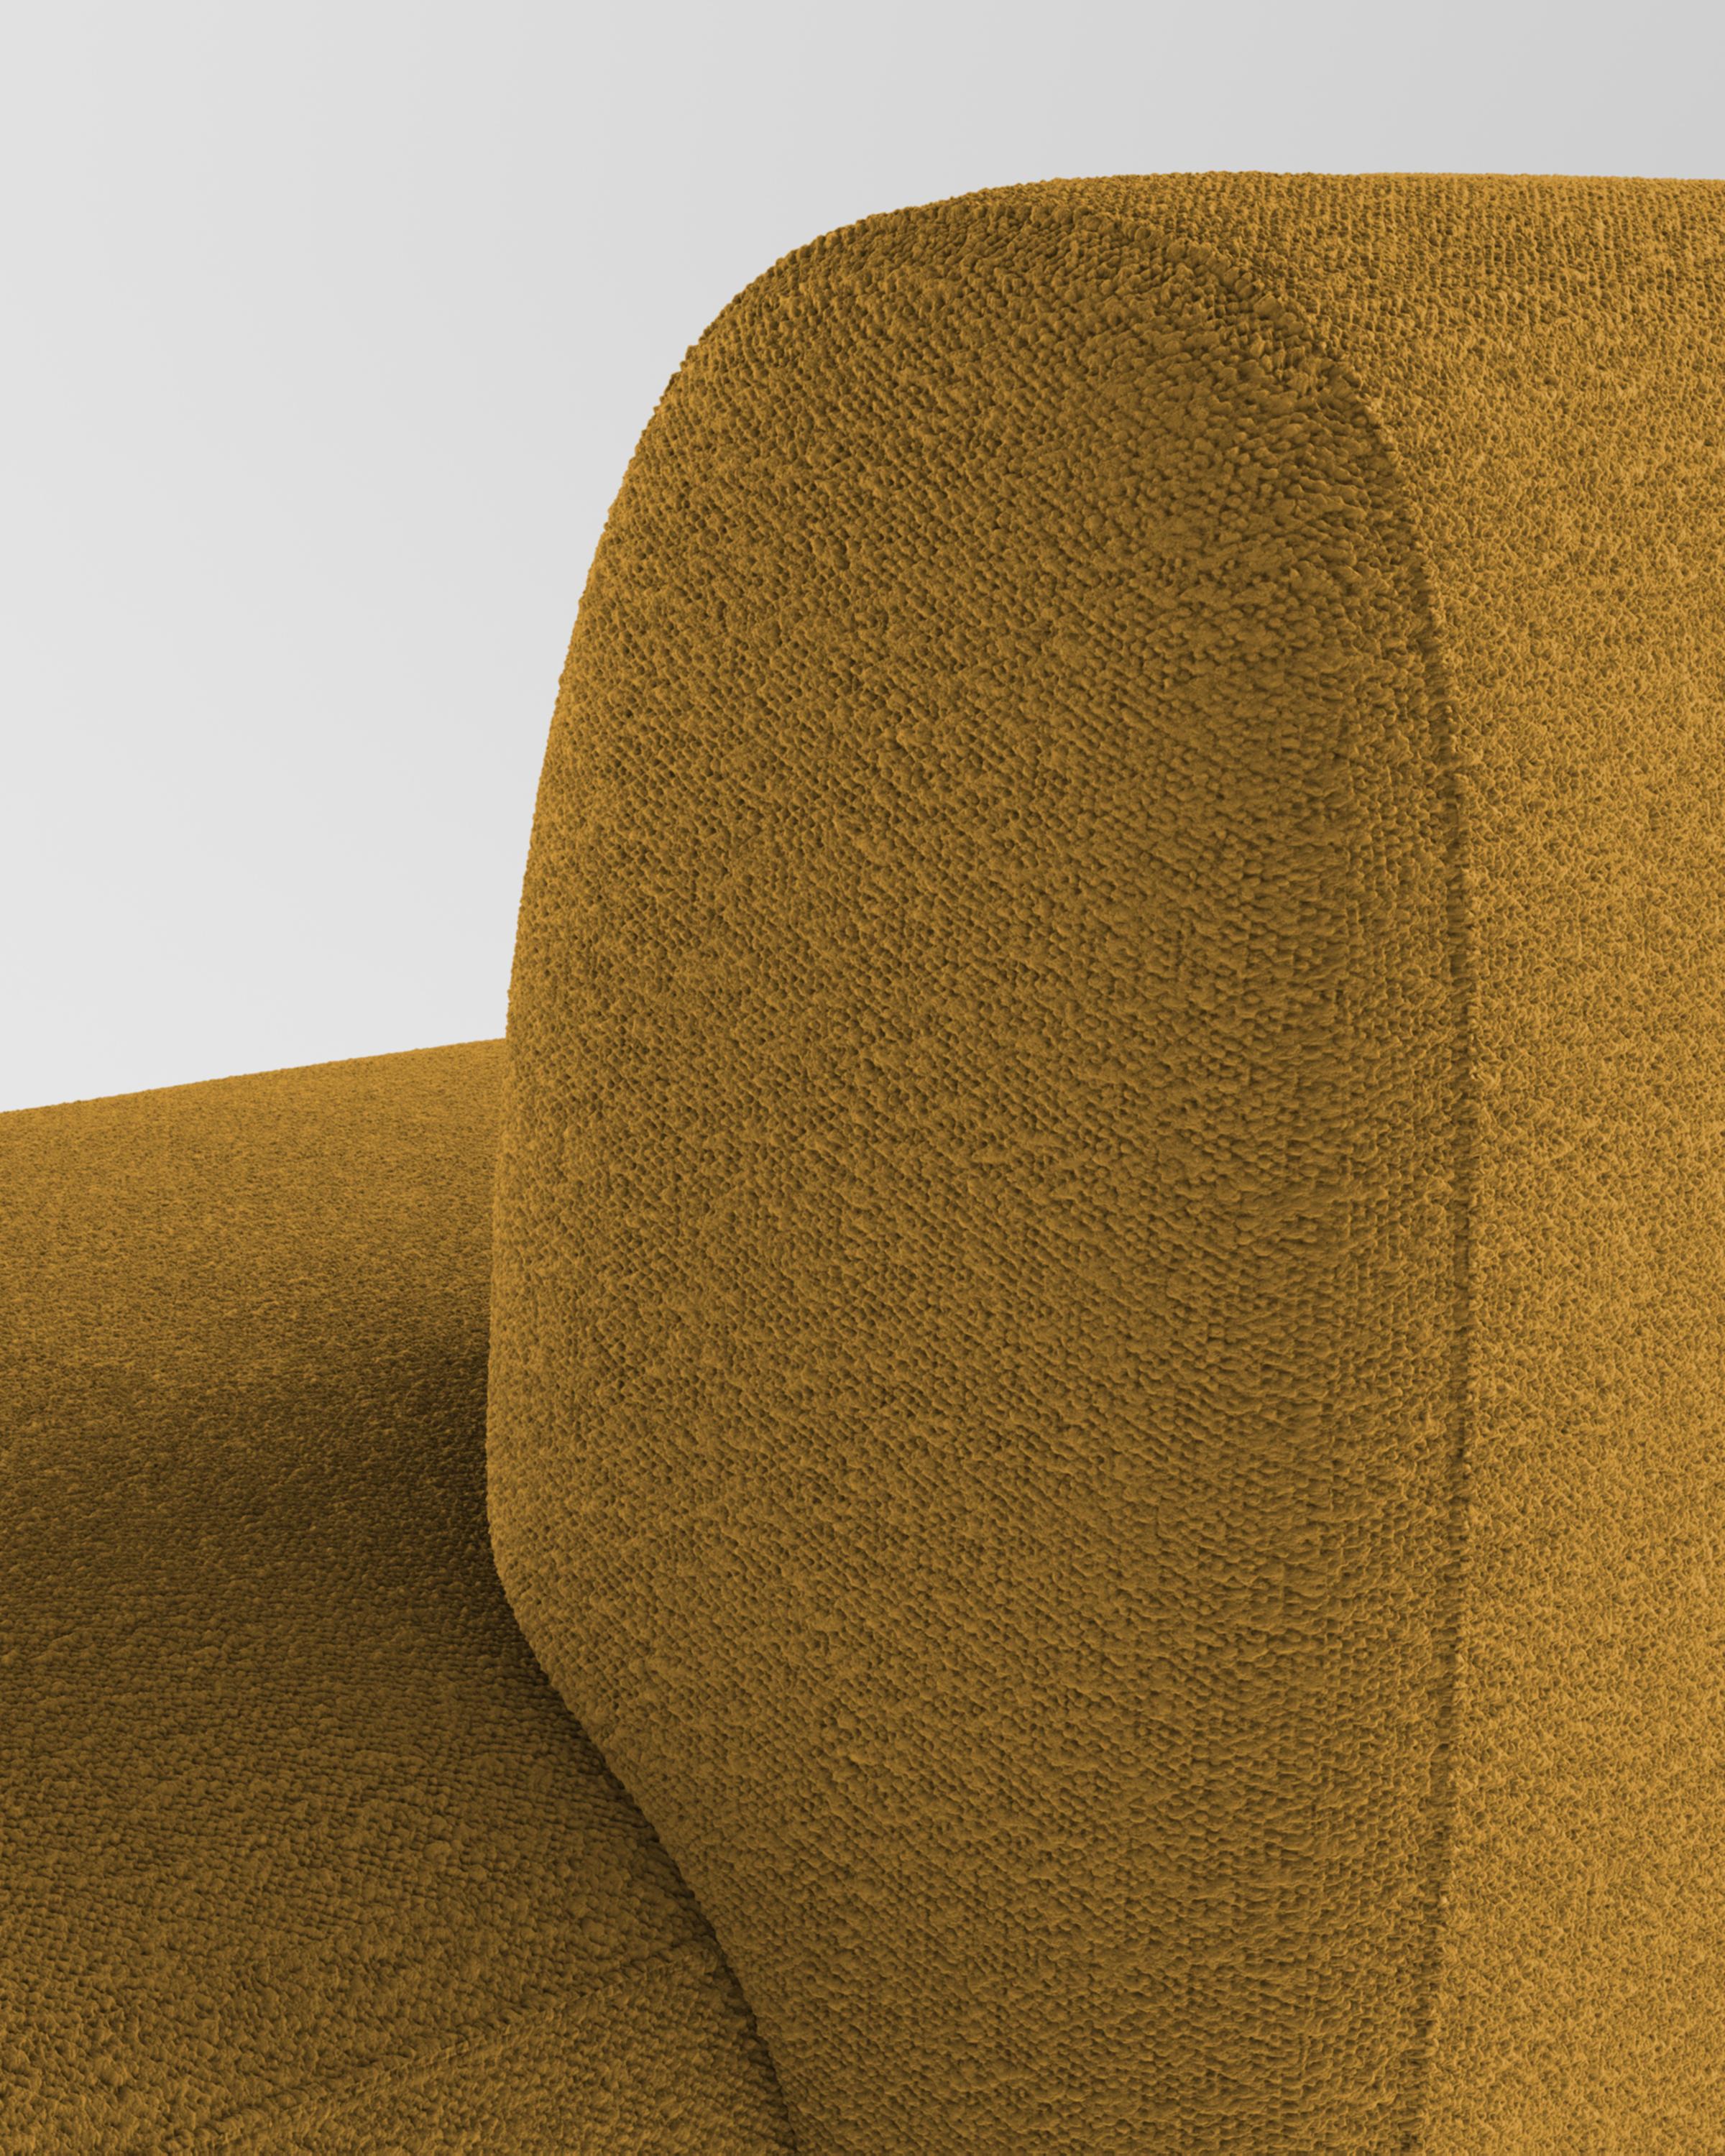 Das Sofa Hug zeichnet sich durch klare, schlichte Linien und ein markantes Armlehnendetail aus.
Die Armlehne, die das Sitzkissen zur Hälfte überlappt, schafft ein ineinandergreifendes Detail zwischen den beiden Elementen, während die Polsterung,